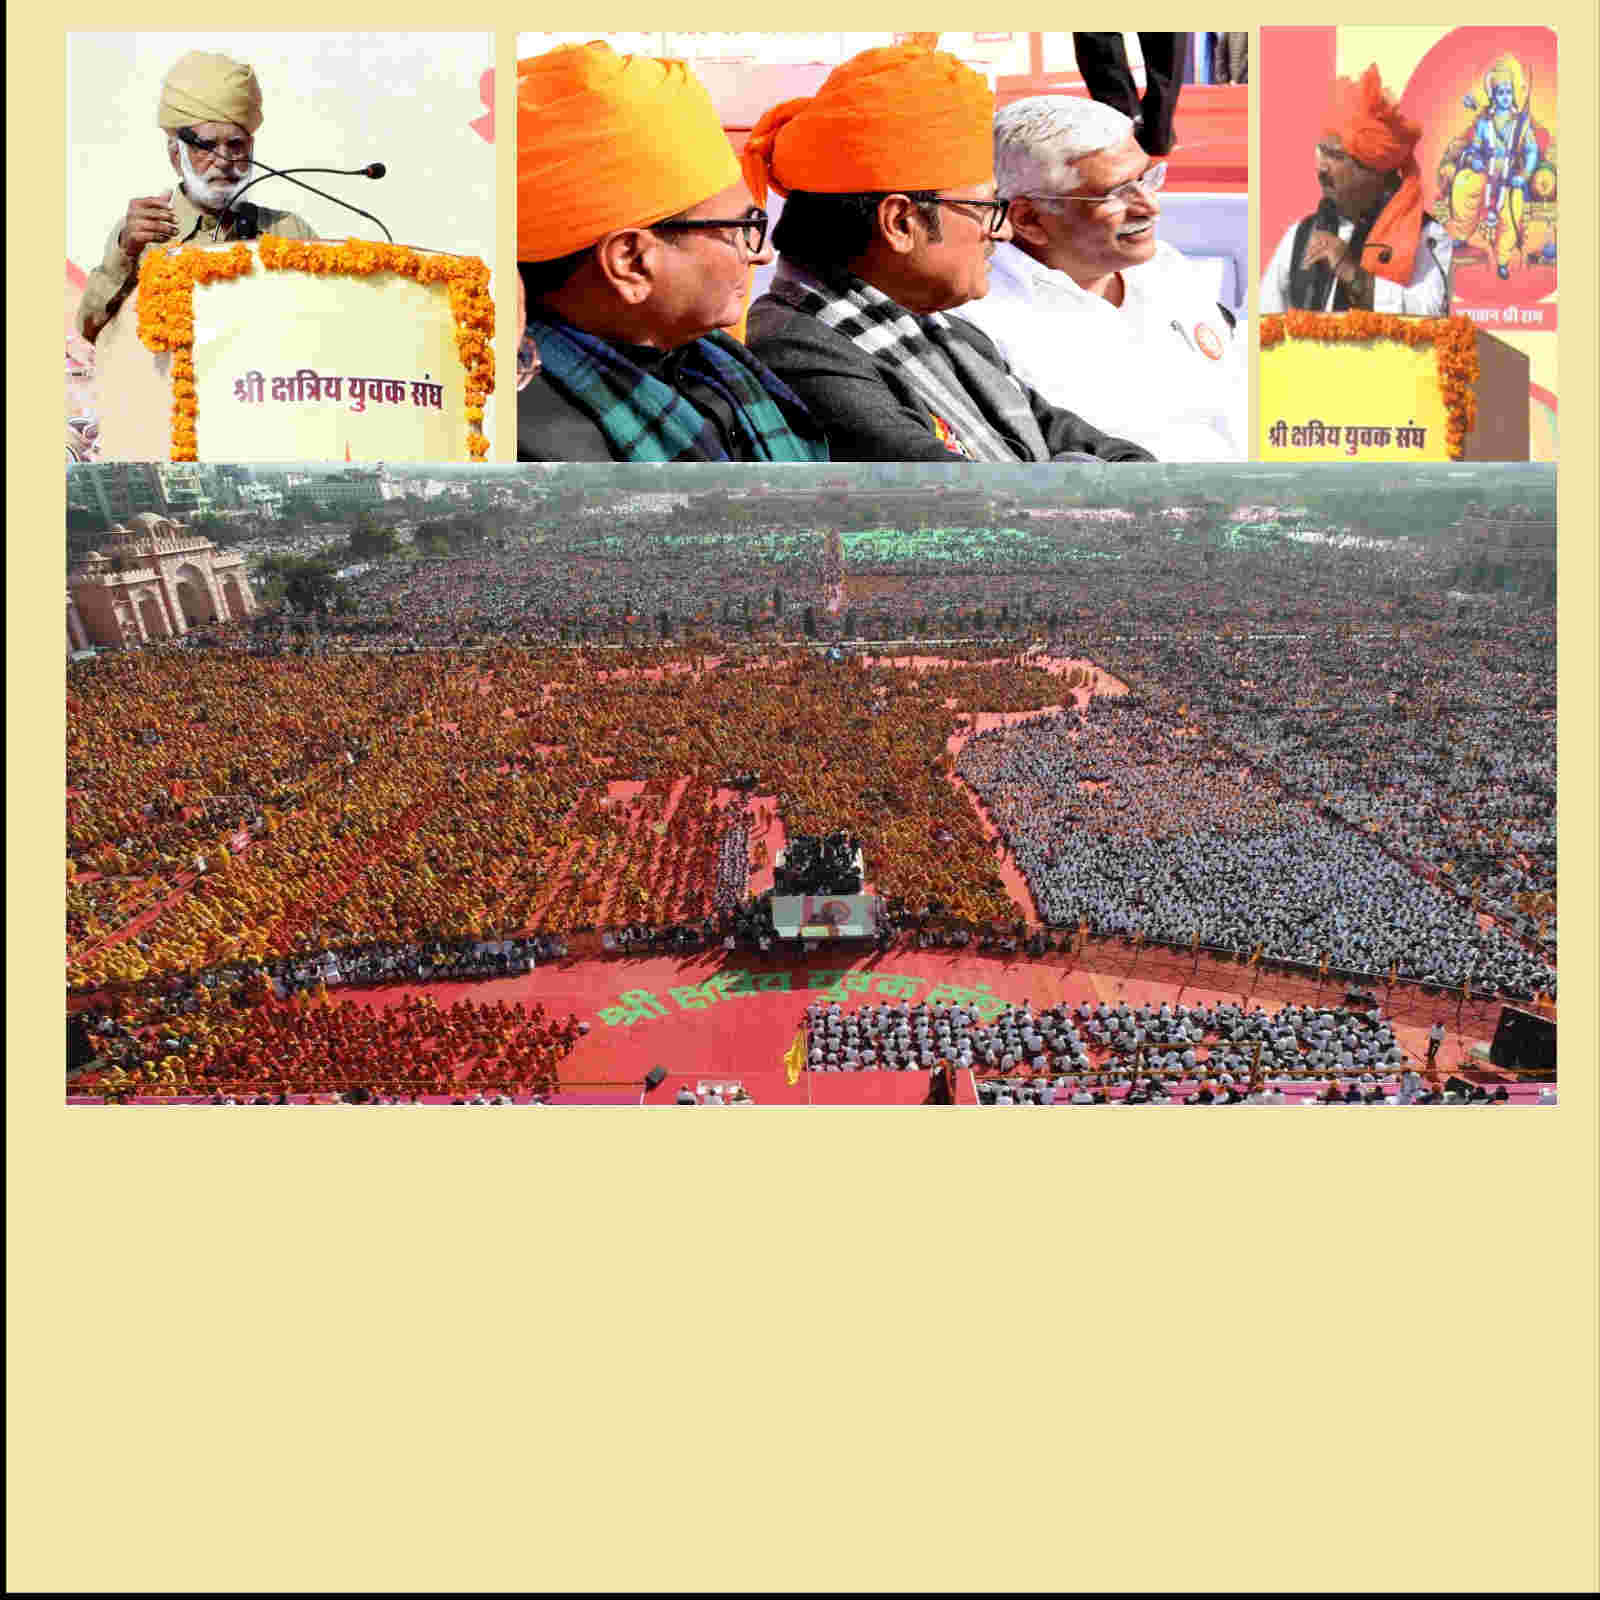 Kshatriya yuvak sangh power center of Rajputs in Rajasthan politics showed strength in heerak jayanti celebration rjsr - राजस्थान की सियासत में राजपूतों के पावर सेंटर क्षत्रिय युवक संघ का &#39;पावर ...